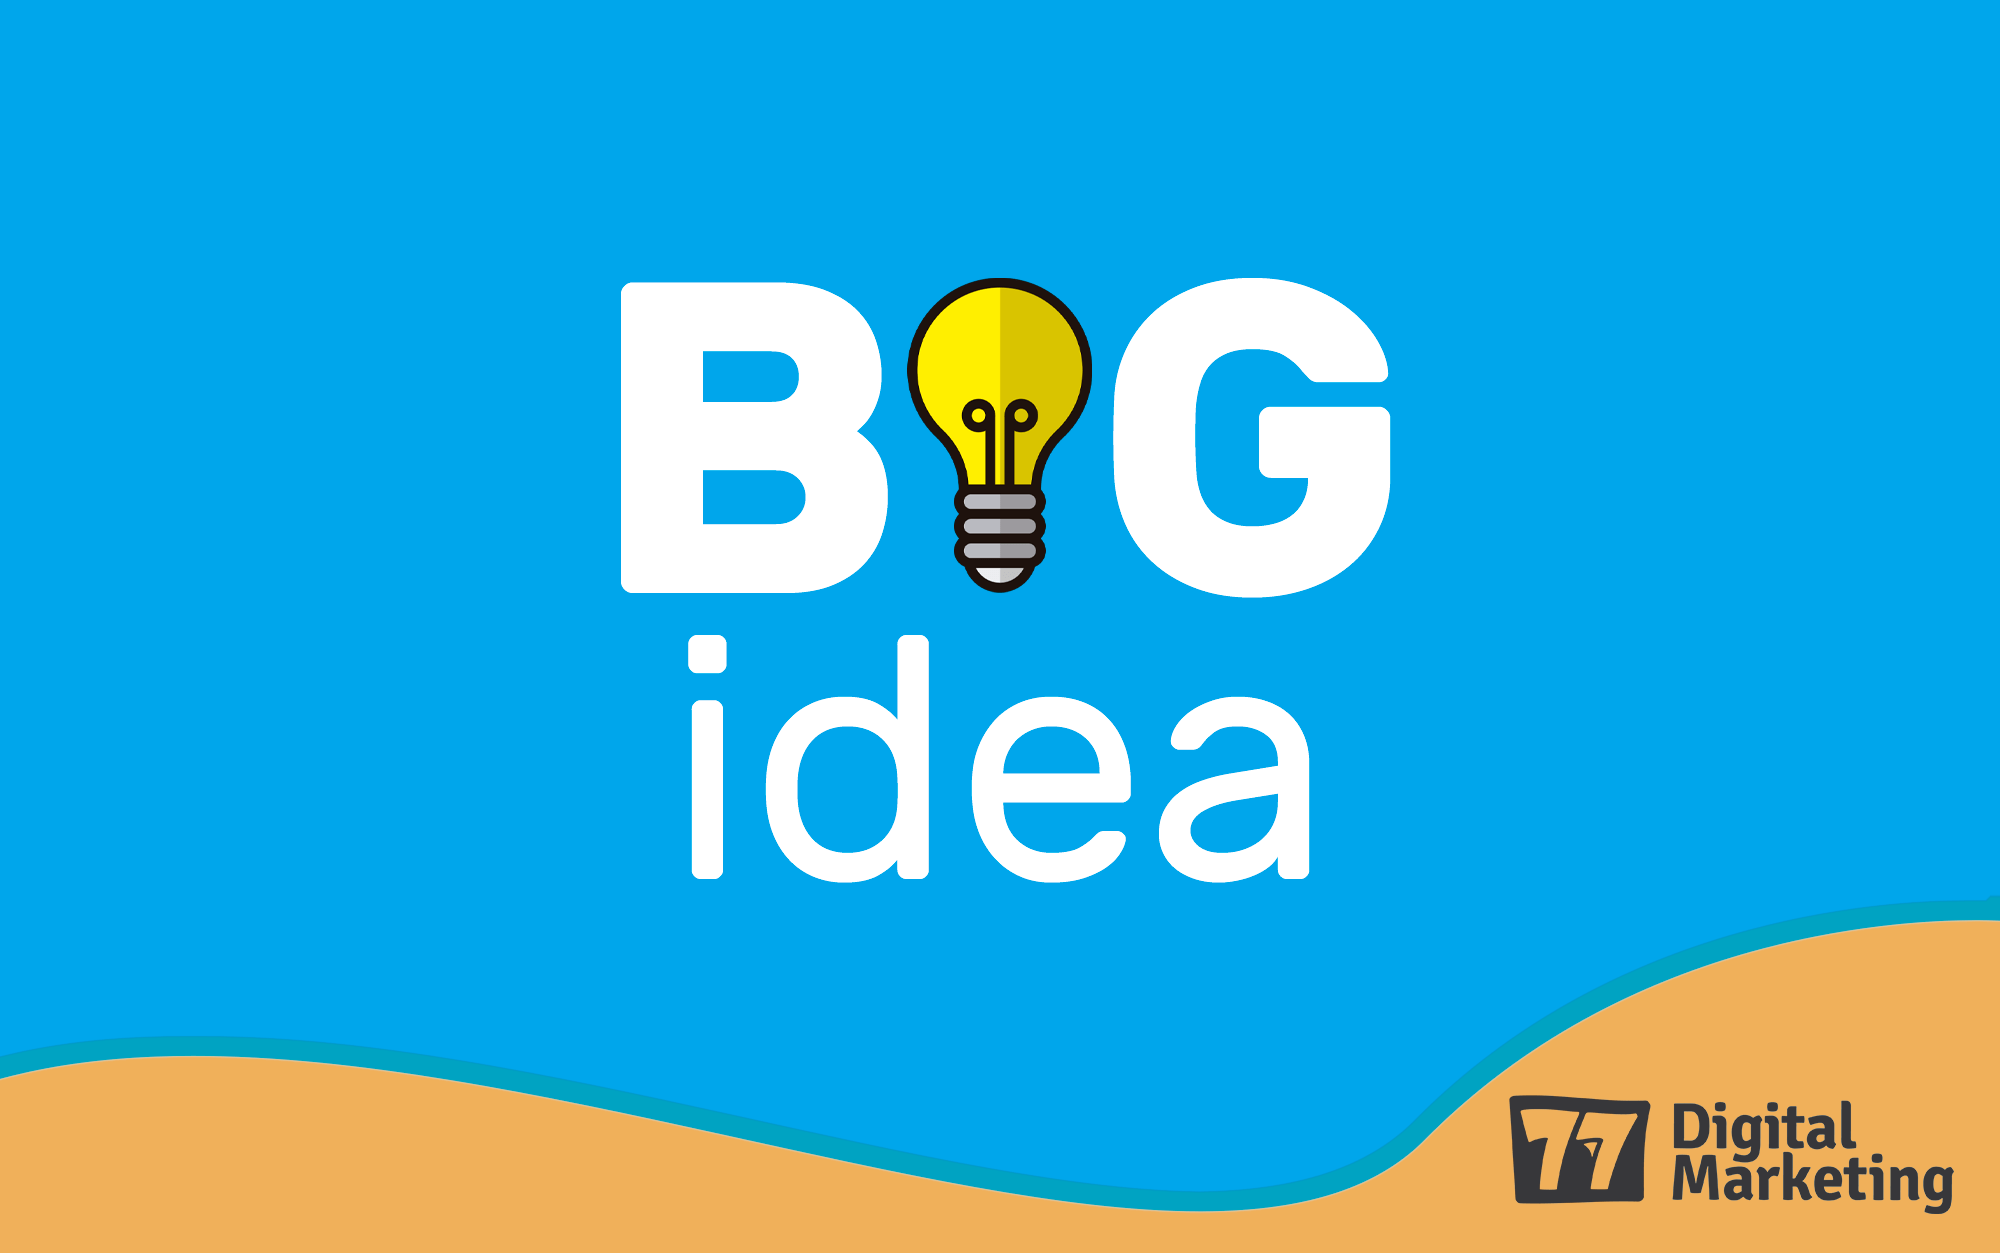 big idea